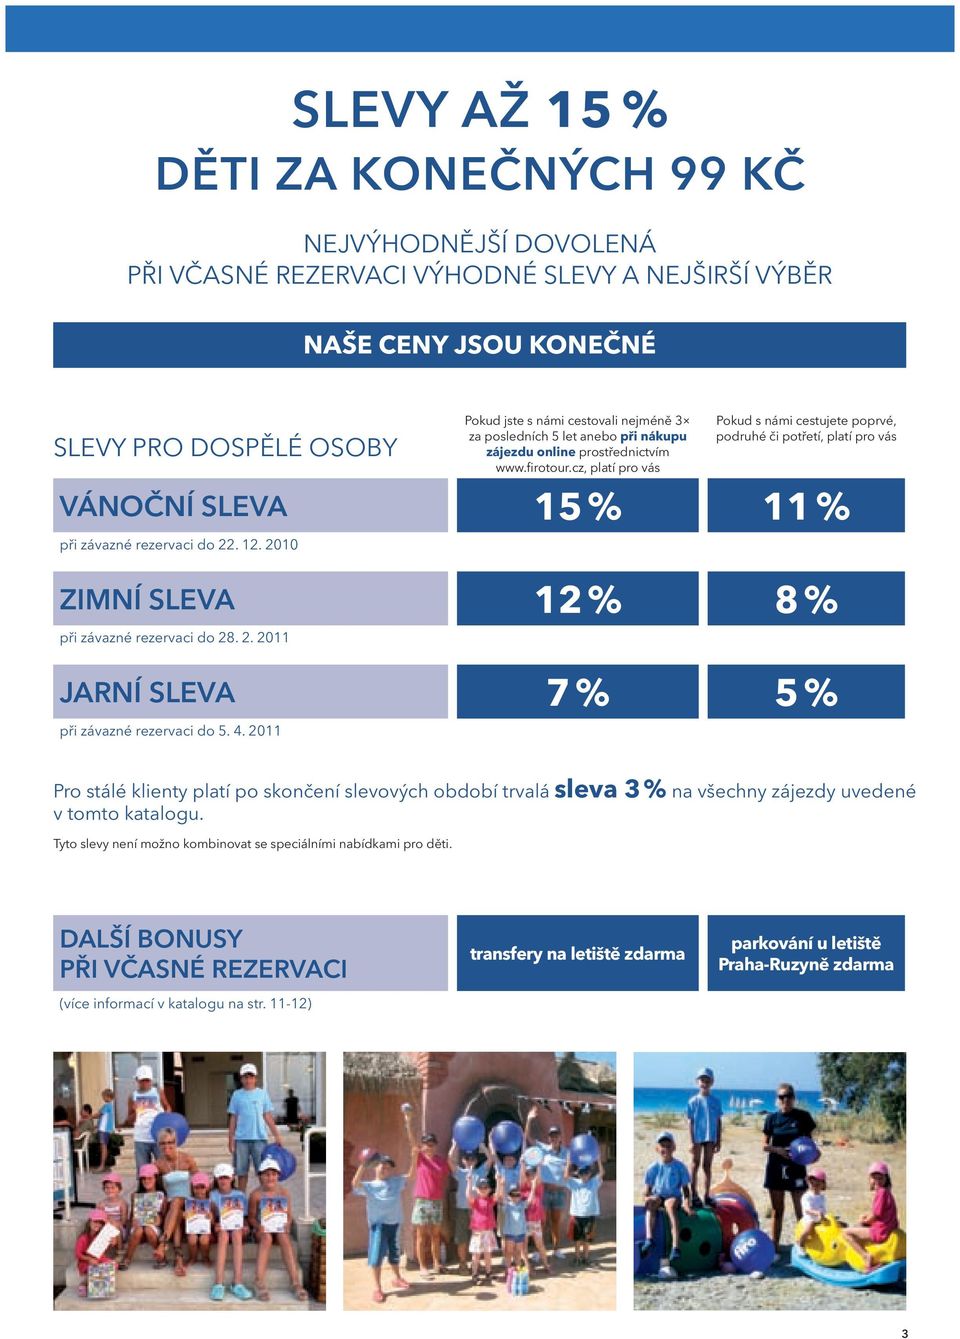 2010 ZimNí SlEVA 12 % 8 % při závazné rezervaci do 28. 2. 2011 JArNí SlEVA 7 % 5 % při závazné rezervaci do 5. 4.